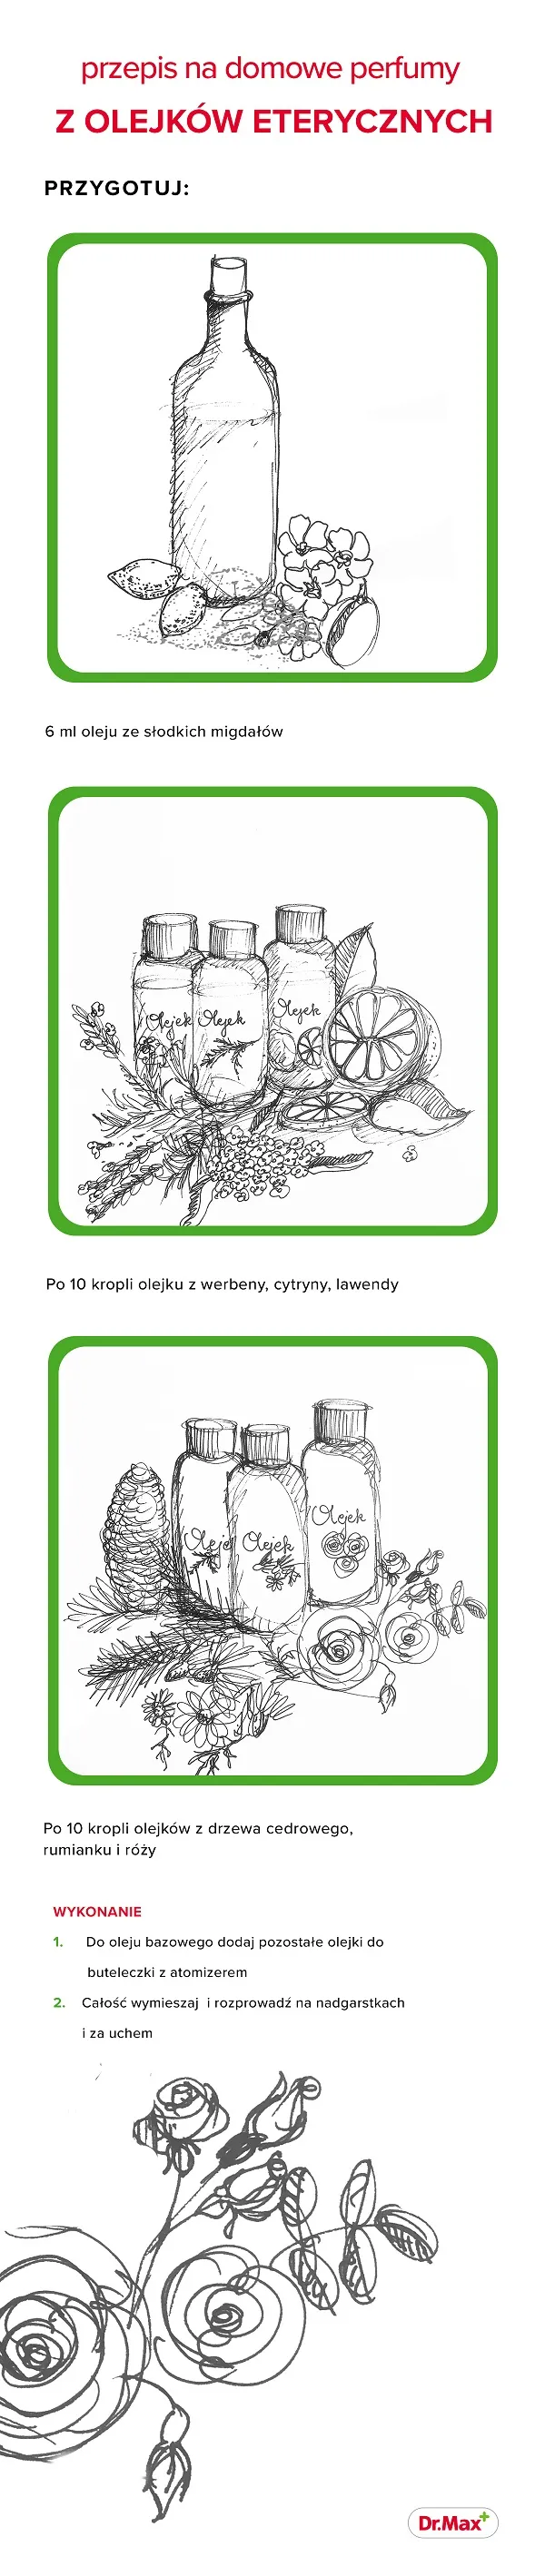 Infografika - przepis na domowe perfumy